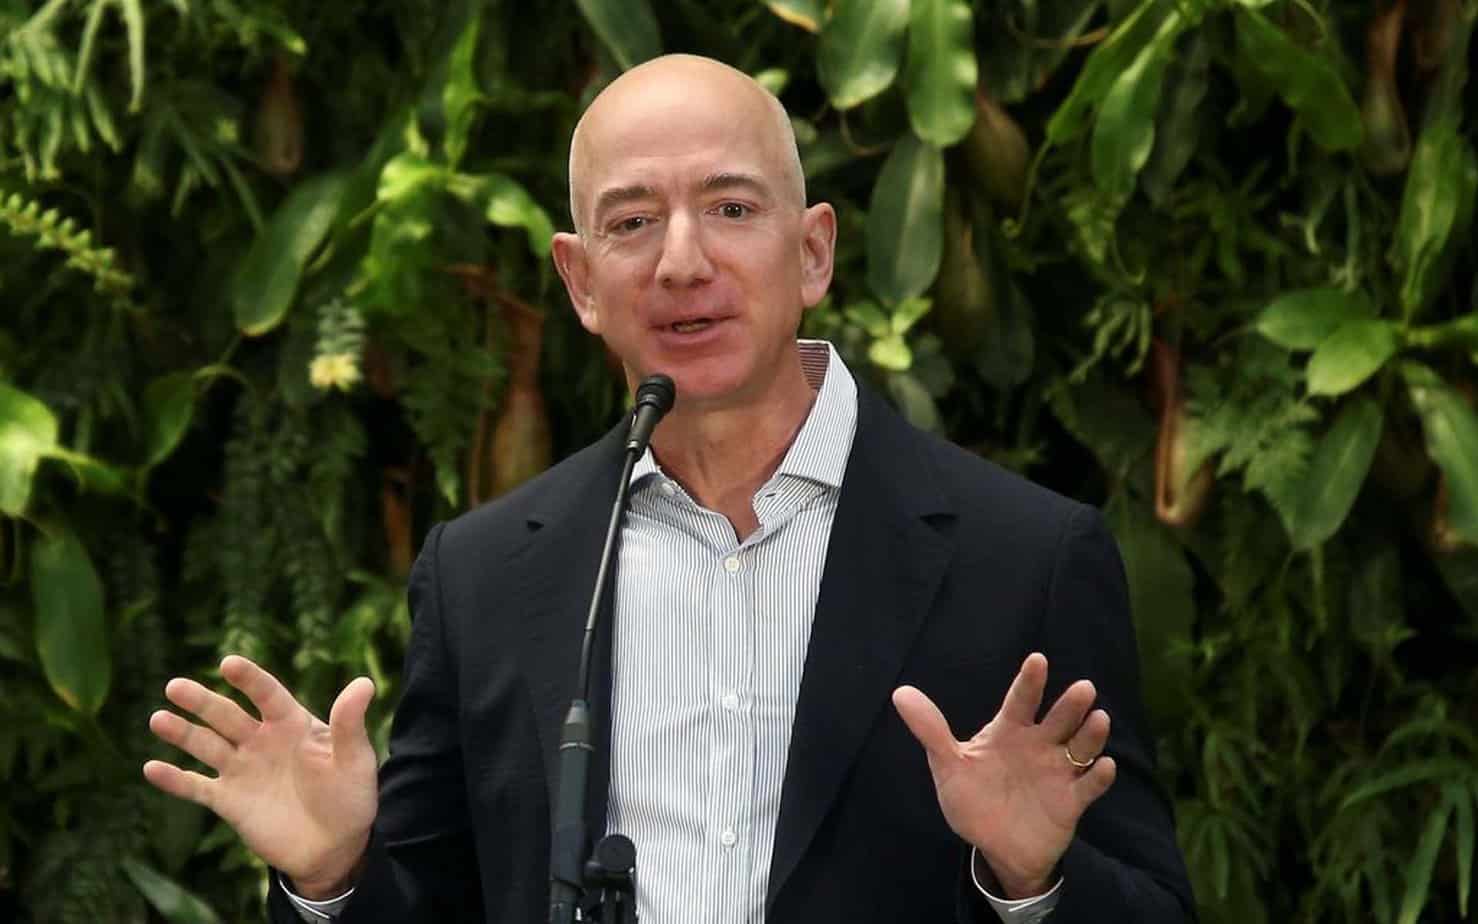 RICHEST MAN ASKS FOR MONEY - Bezos asks for public assistance for Amazon